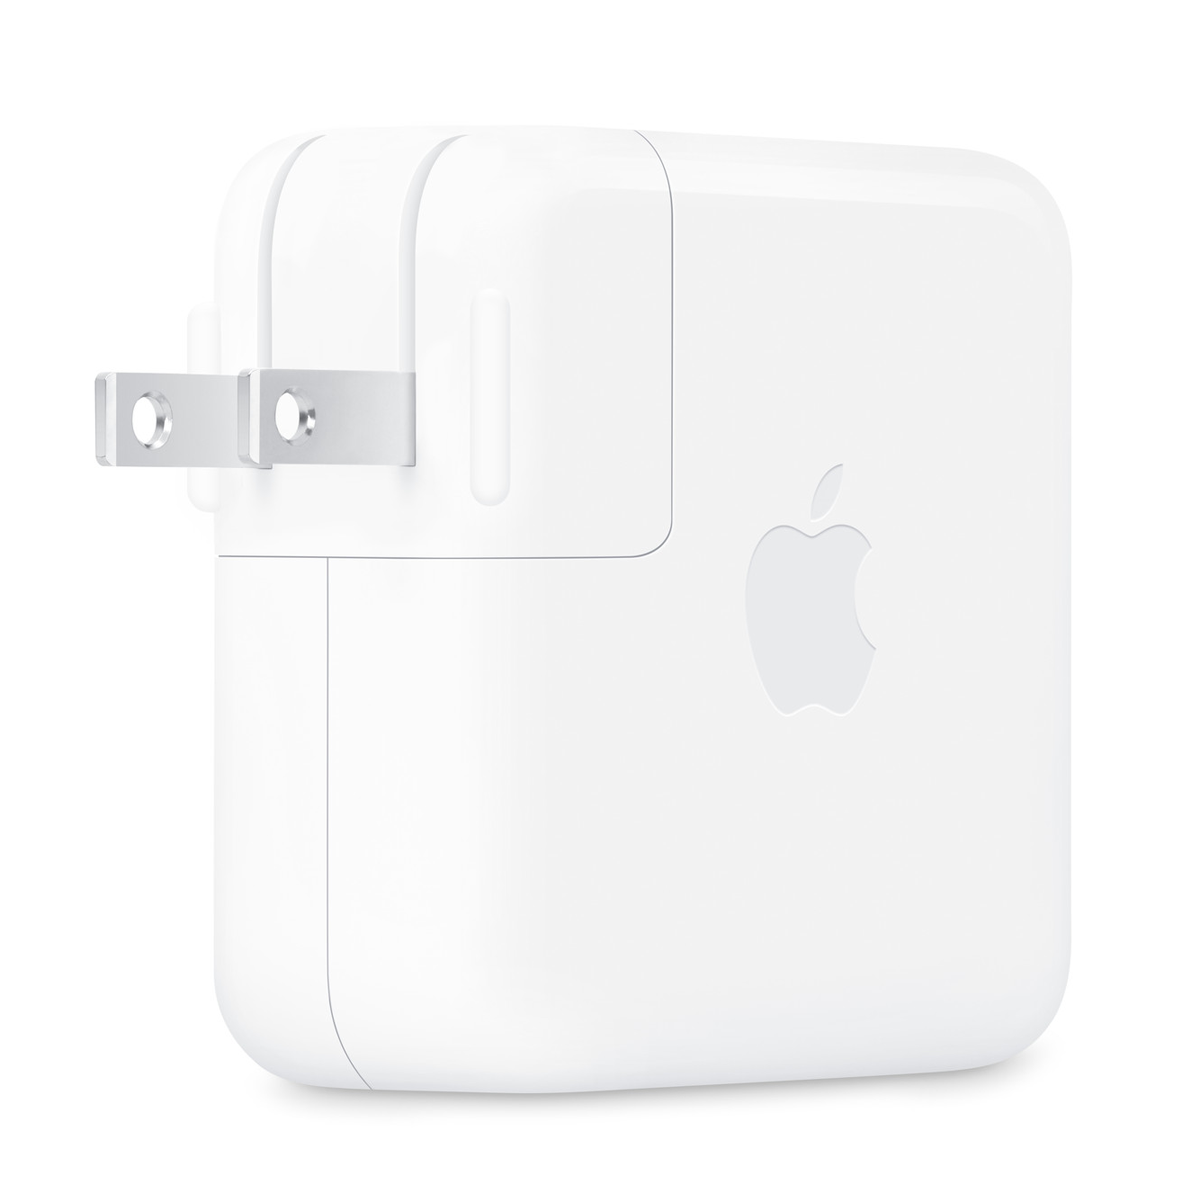 شارژر دیواری اپل مدل USB-C توان 70 وات copy-small-image.png